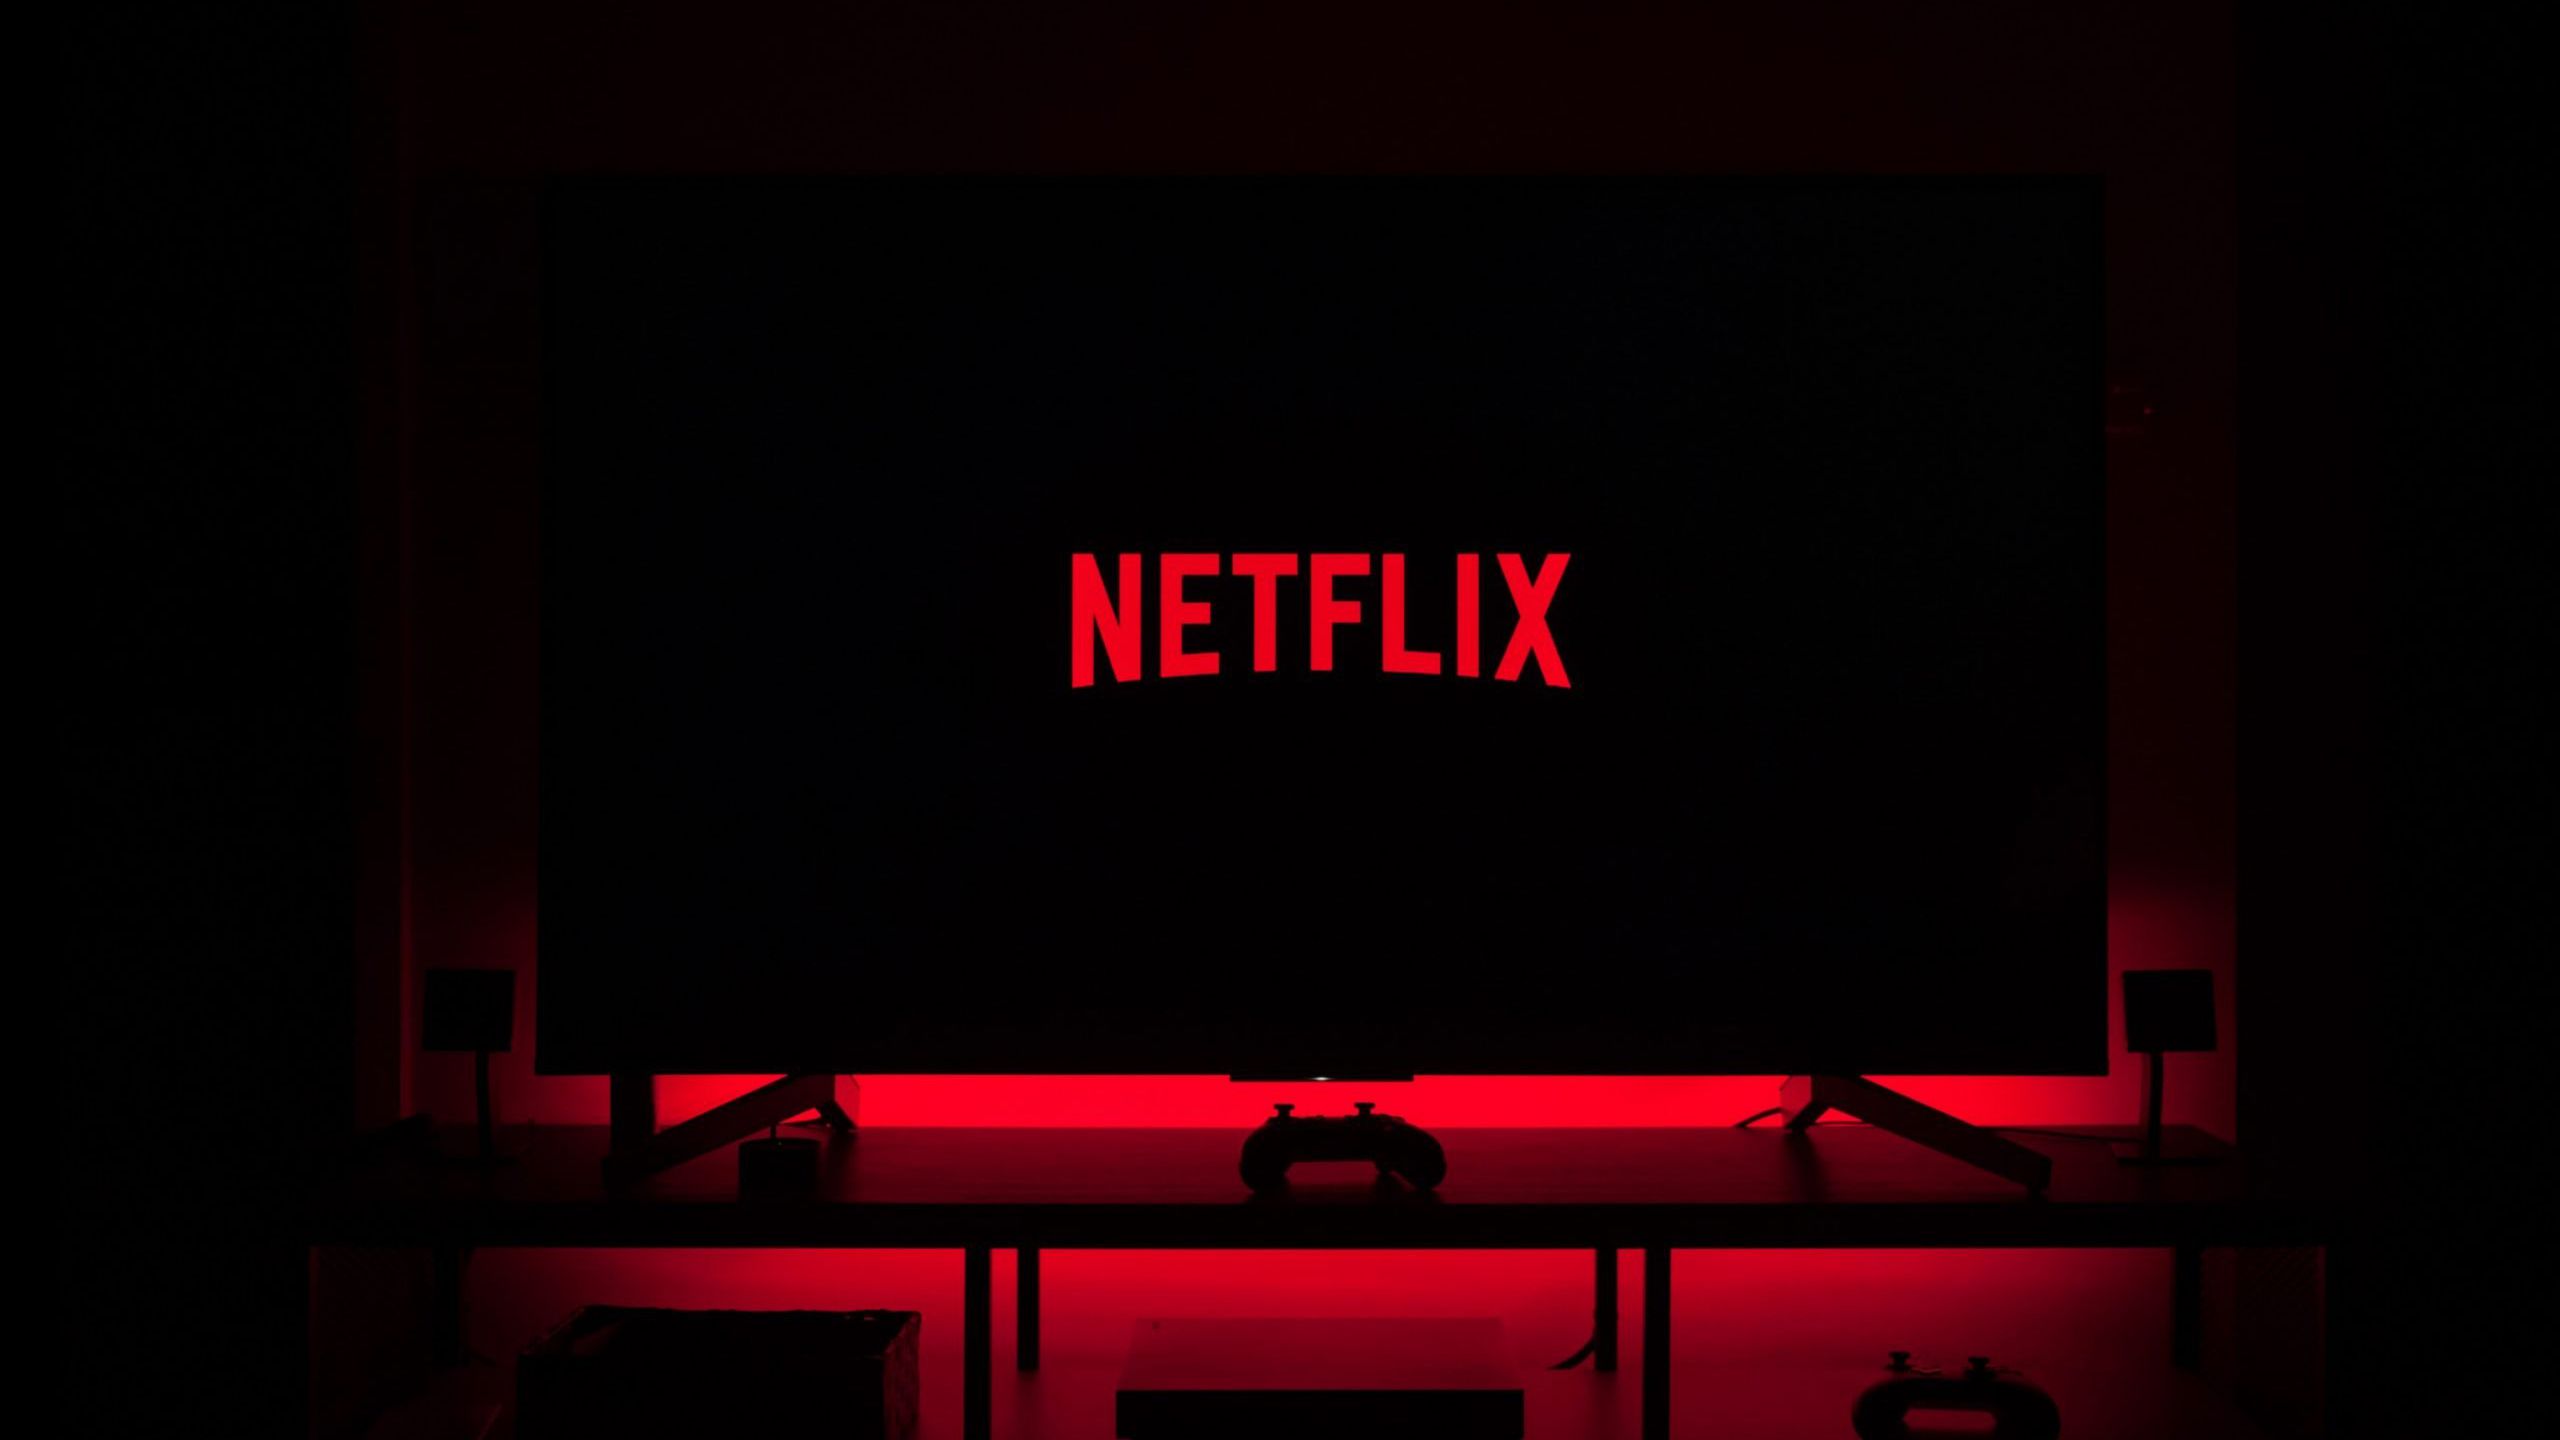 Netflix em xeque após fim do compartilhamento de senhas